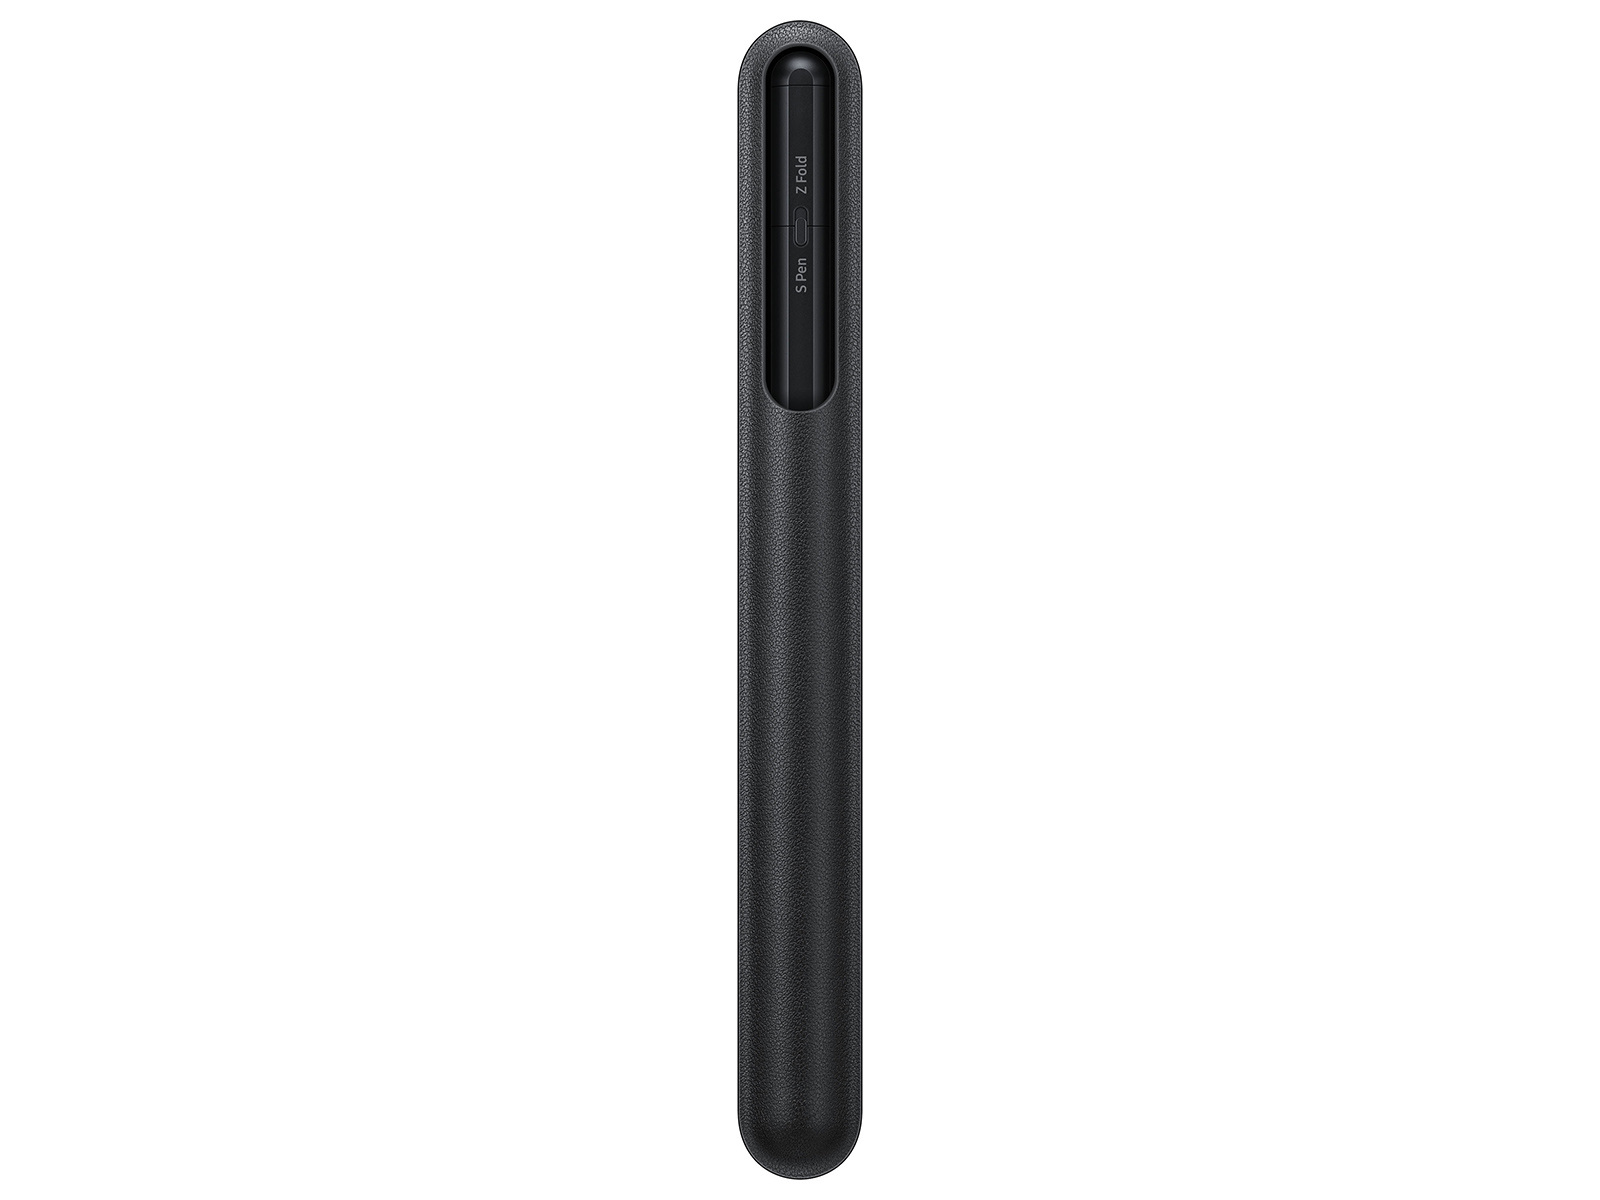 S Pen Pro, Black Mobile Accessories - EJ-P5450SBEGUS | Samsung US